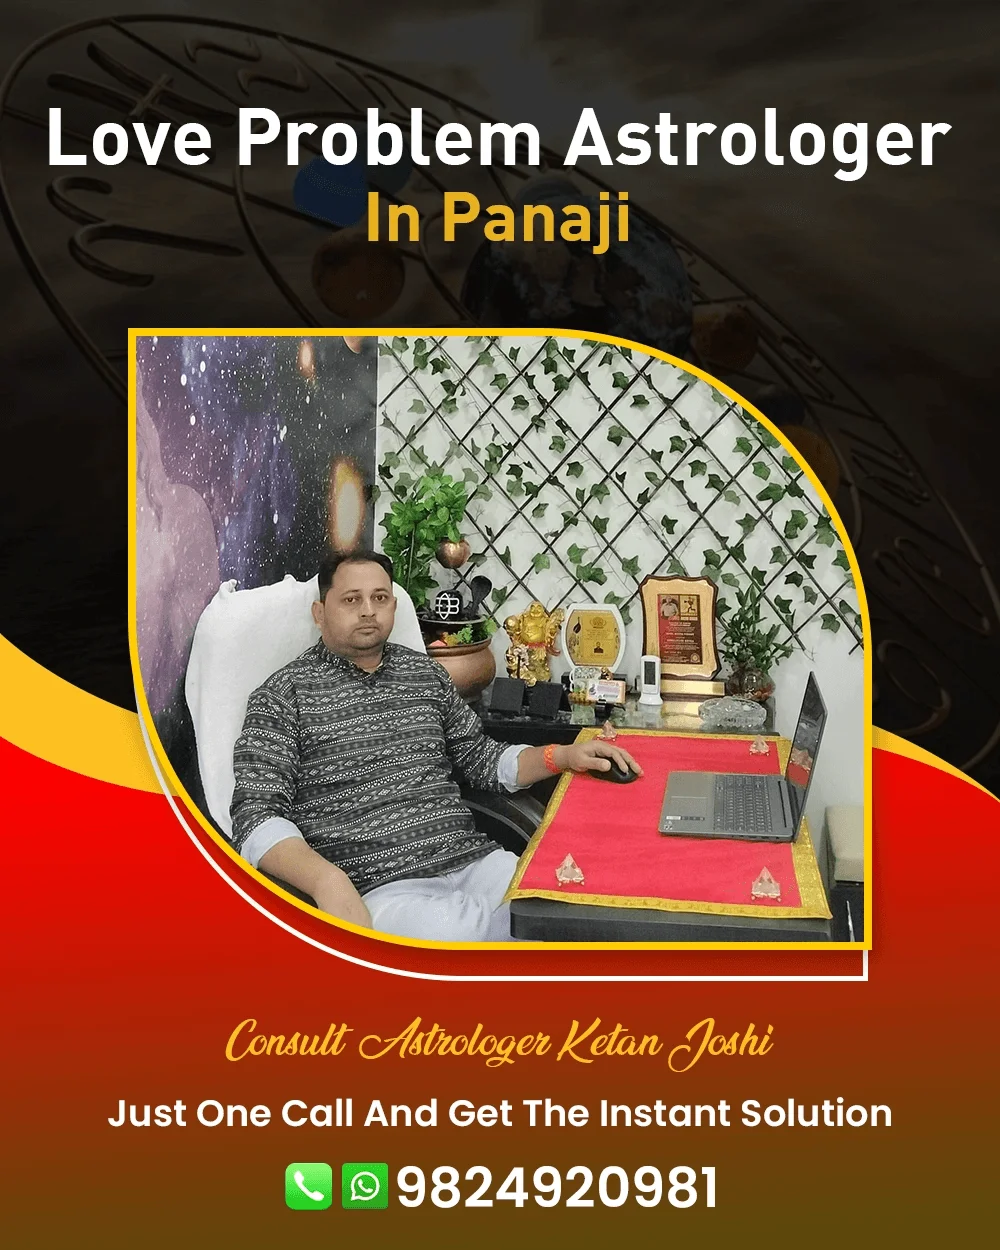 Love Problem Astrologer In Panaji